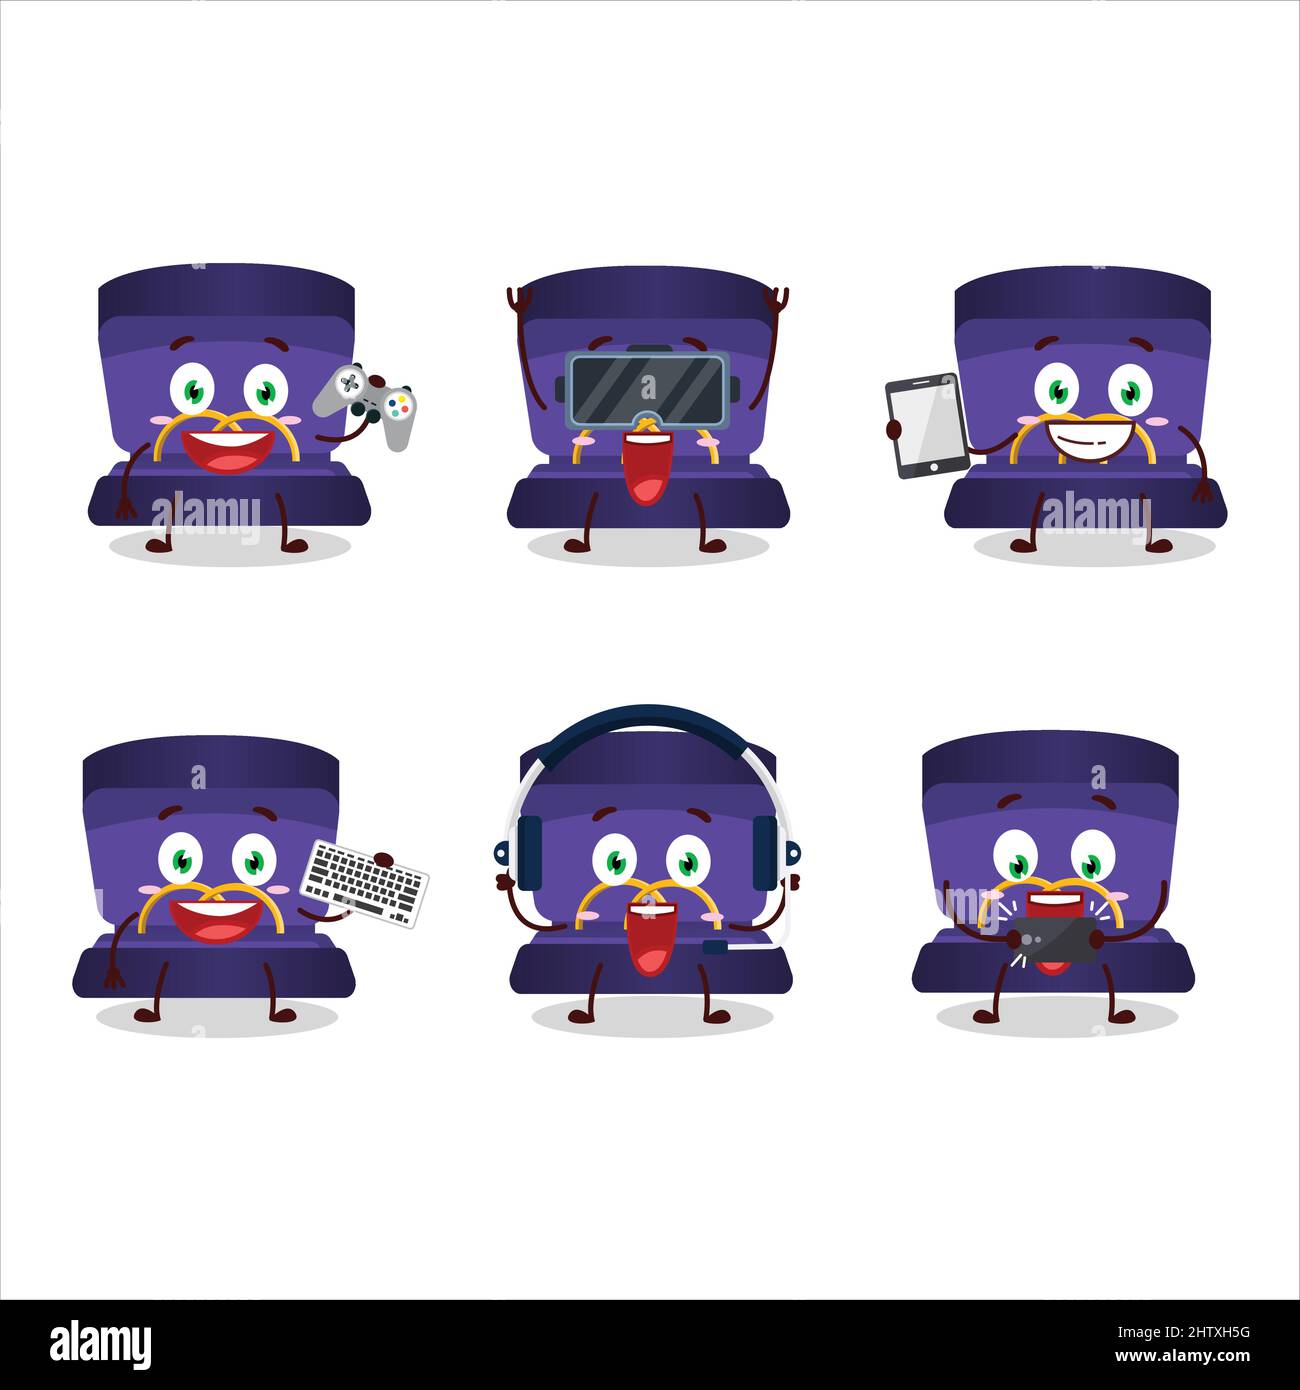 Le caractère de dessin animé de boîte à anneau violet joue à des jeux avec diverses émoticônes mignons. Illustration vectorielle Illustration de Vecteur